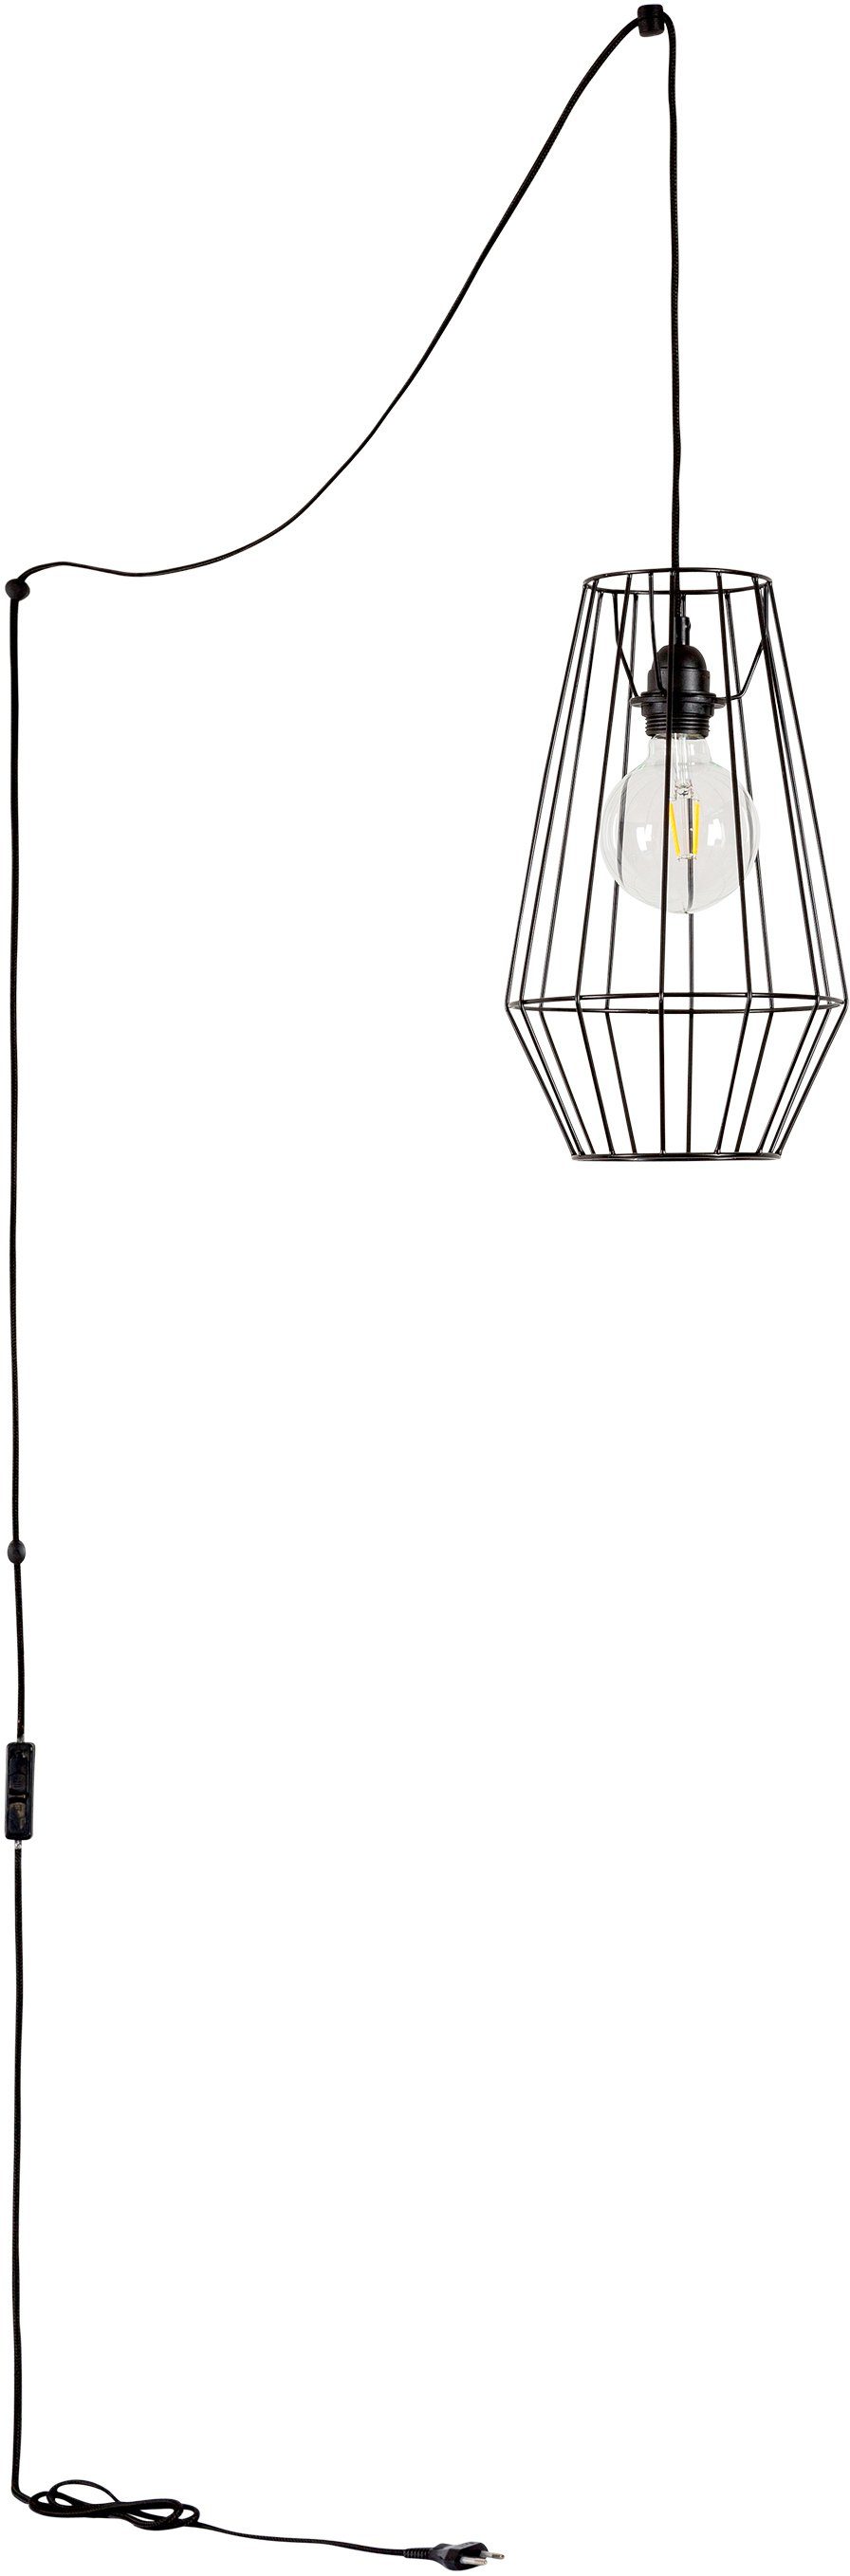 BRITOP LIGHTING Hanglamp ENDORFINA Decoratieve lamp van metaal, bijpassende LM E27 / exclusief, Made in Europe (1 stuk)